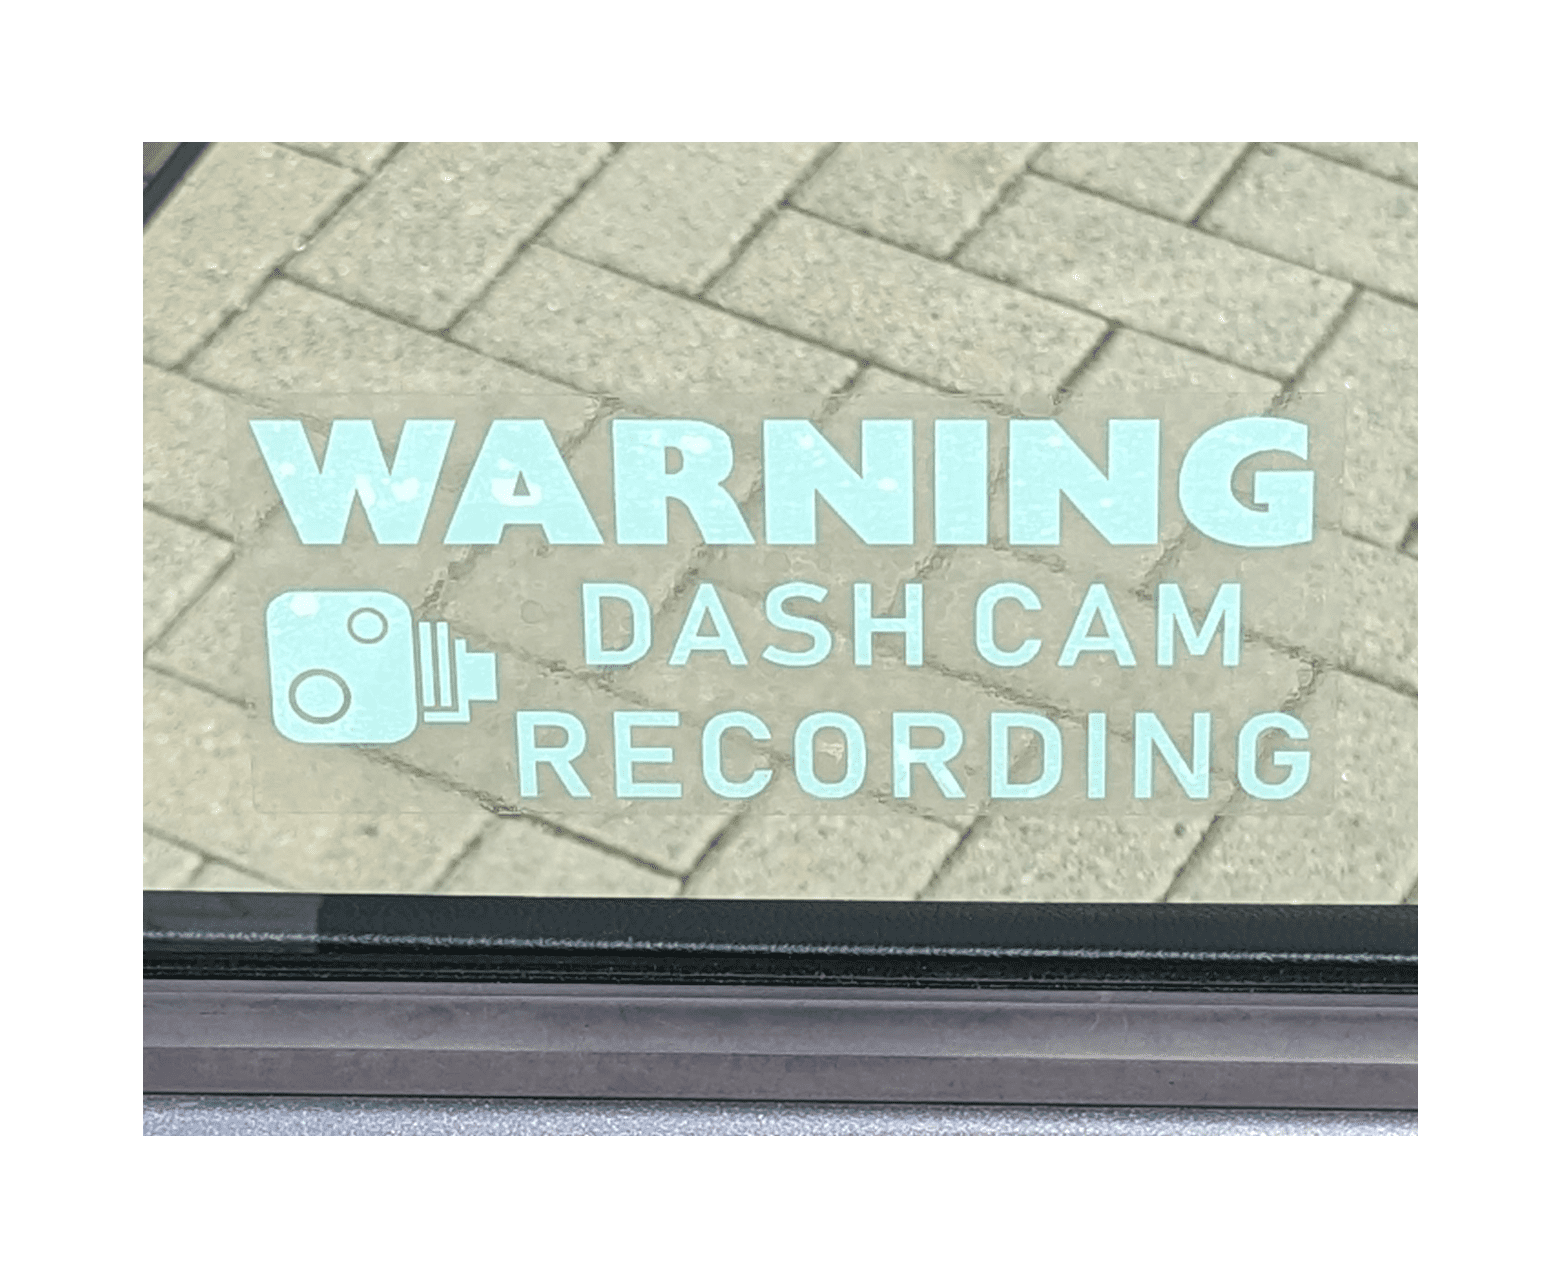 Naklejka samochodowa Dash Cam Recording biała - 203x85mm - wewnątrz okna